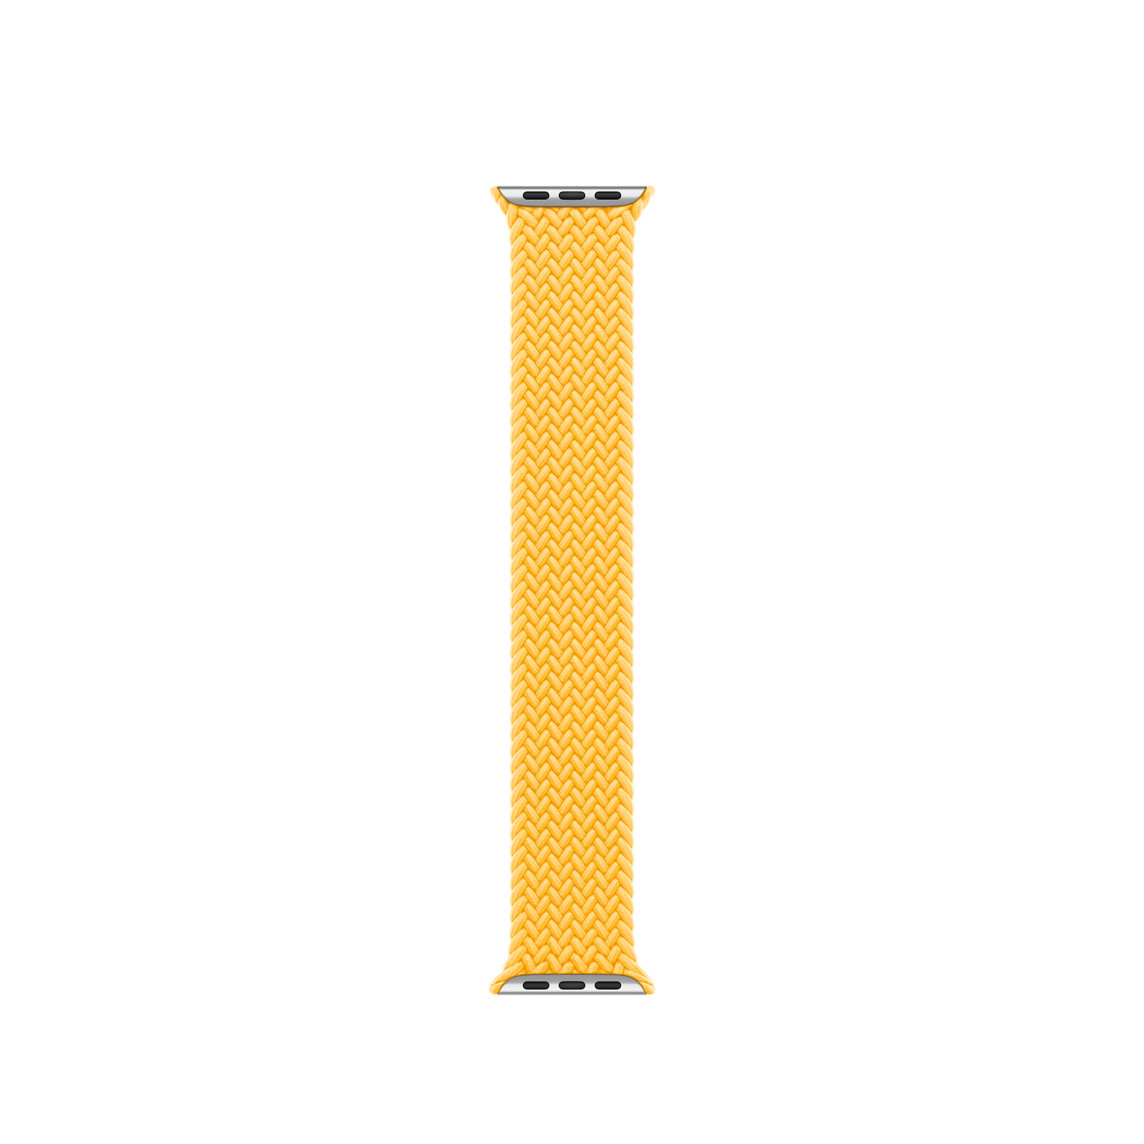 Correa uniloop trenzada amarillo solar, hecha de poliéster tejido e hilos de silicón sin hebillas ni cierres